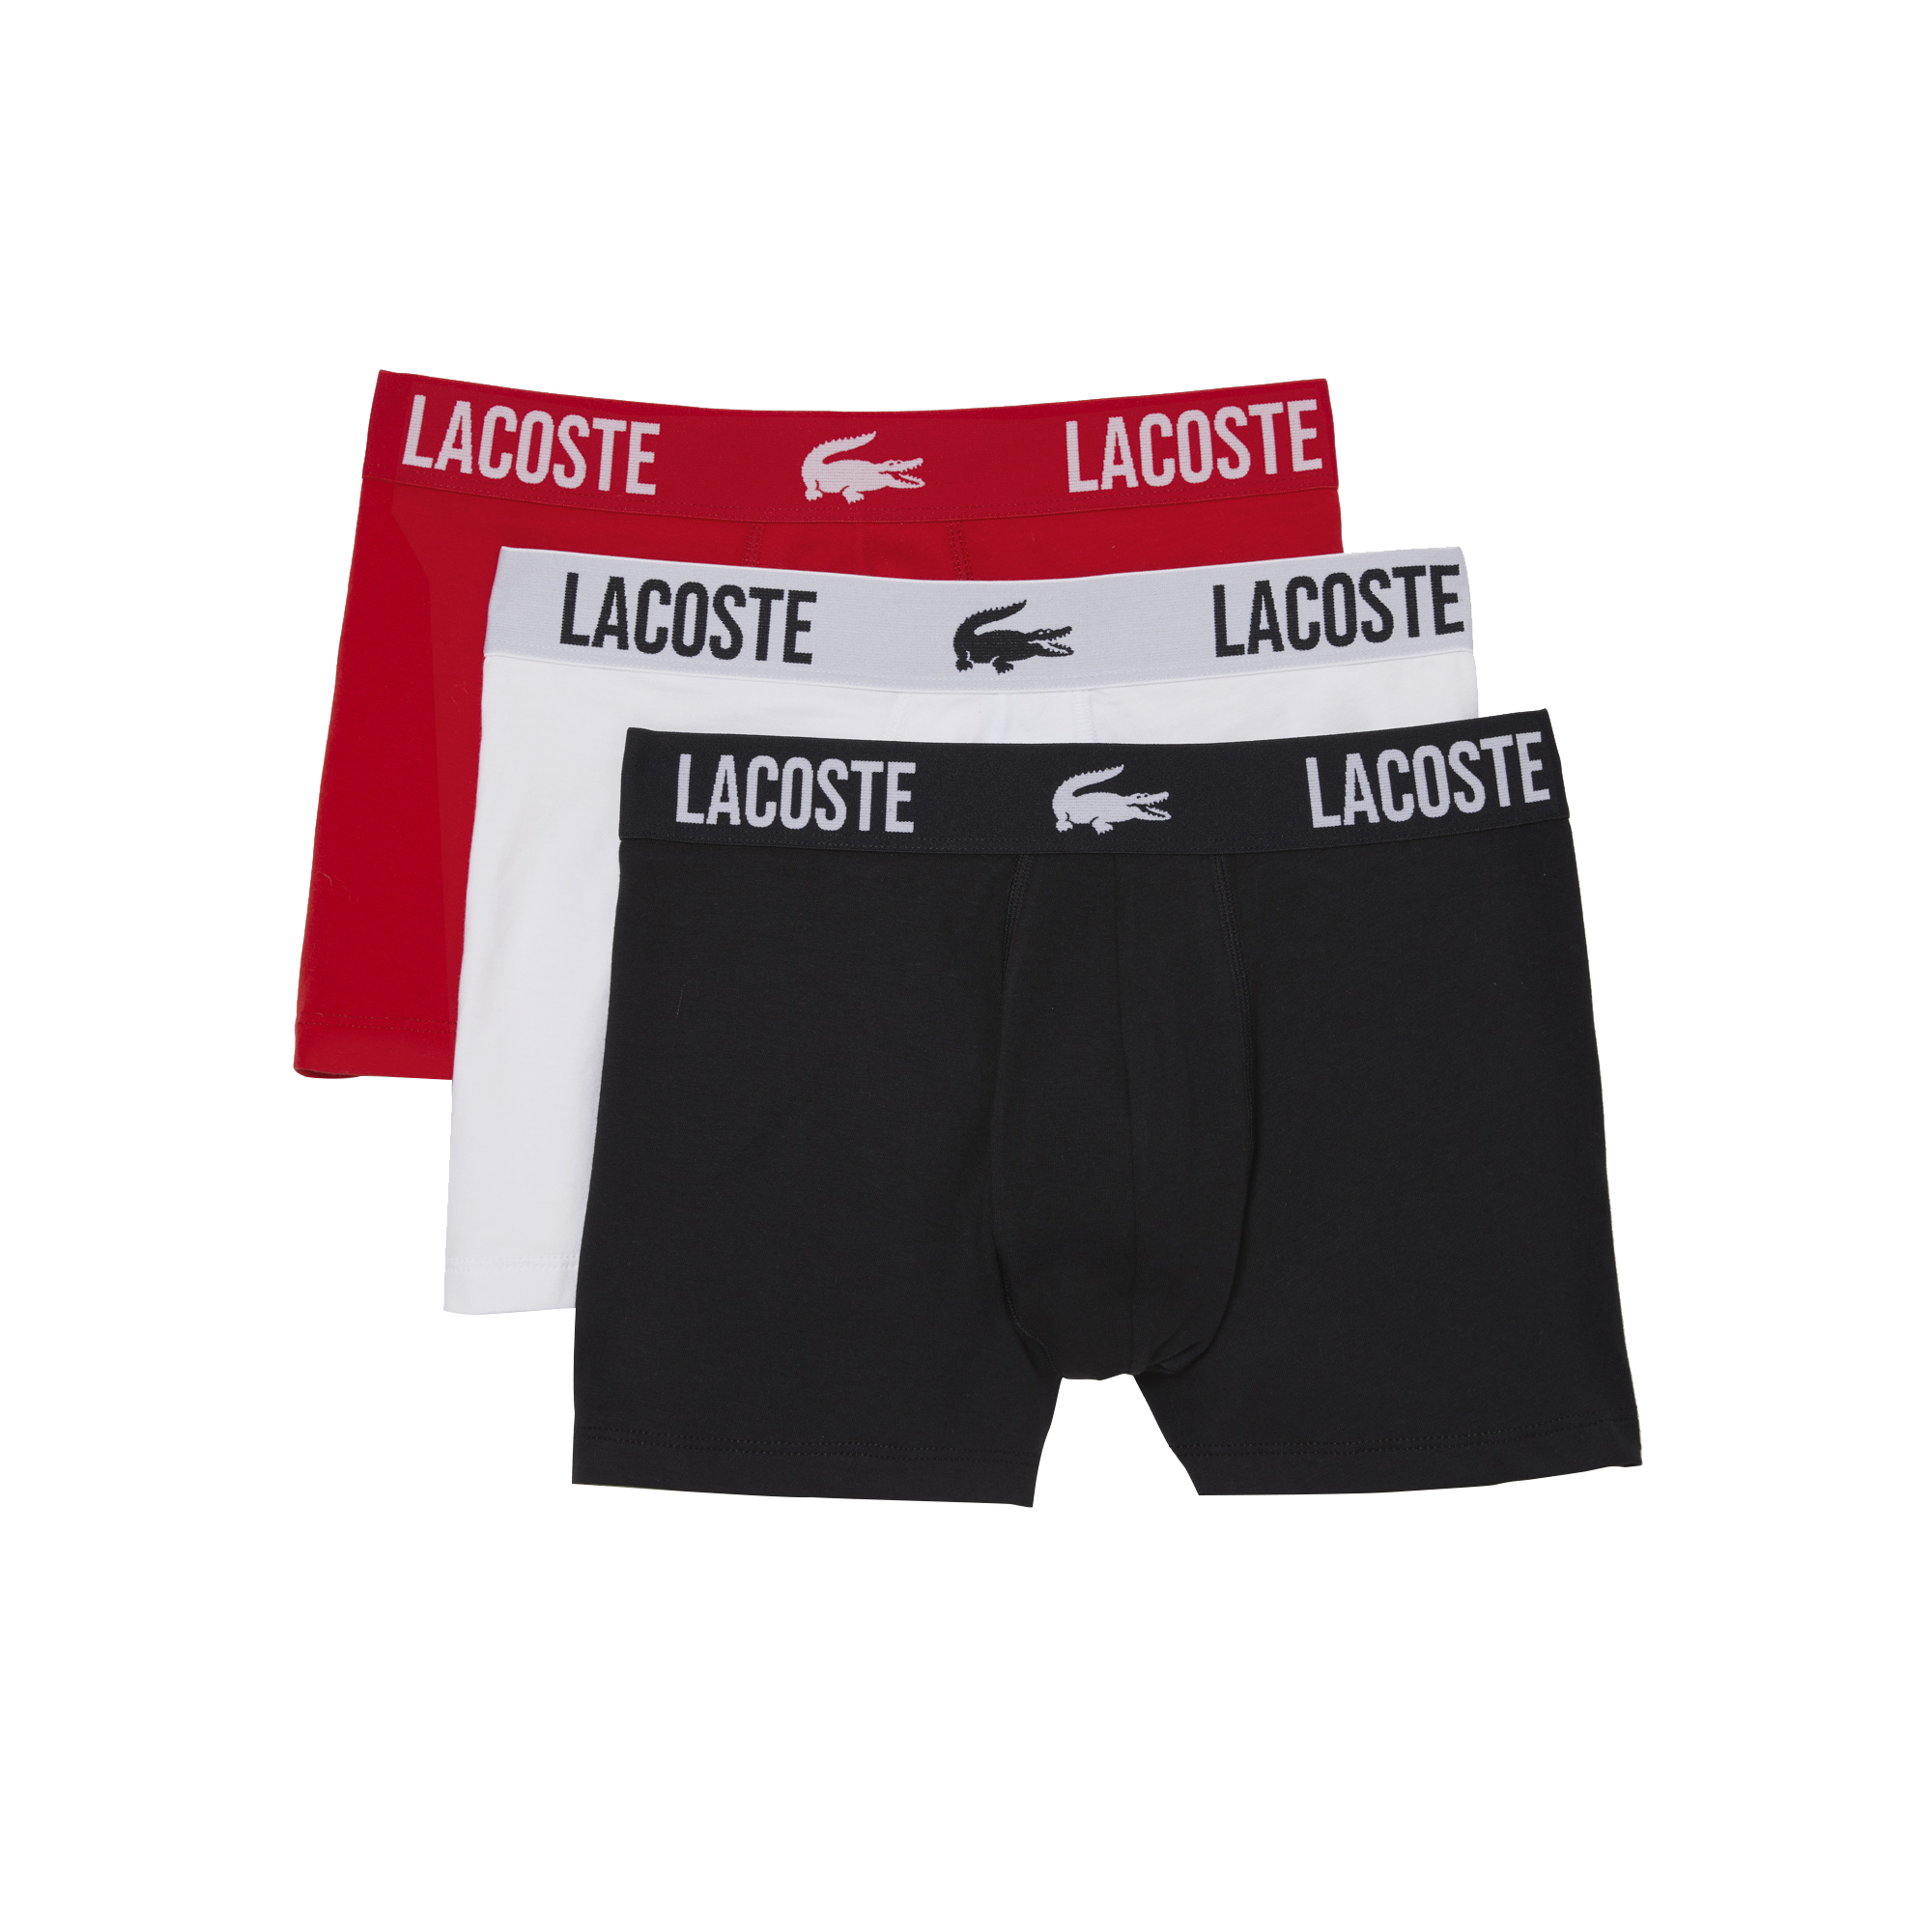 Lacoste Lacoste Boxershorts Heren Met Opdruk Logo Zwart Wit Rood